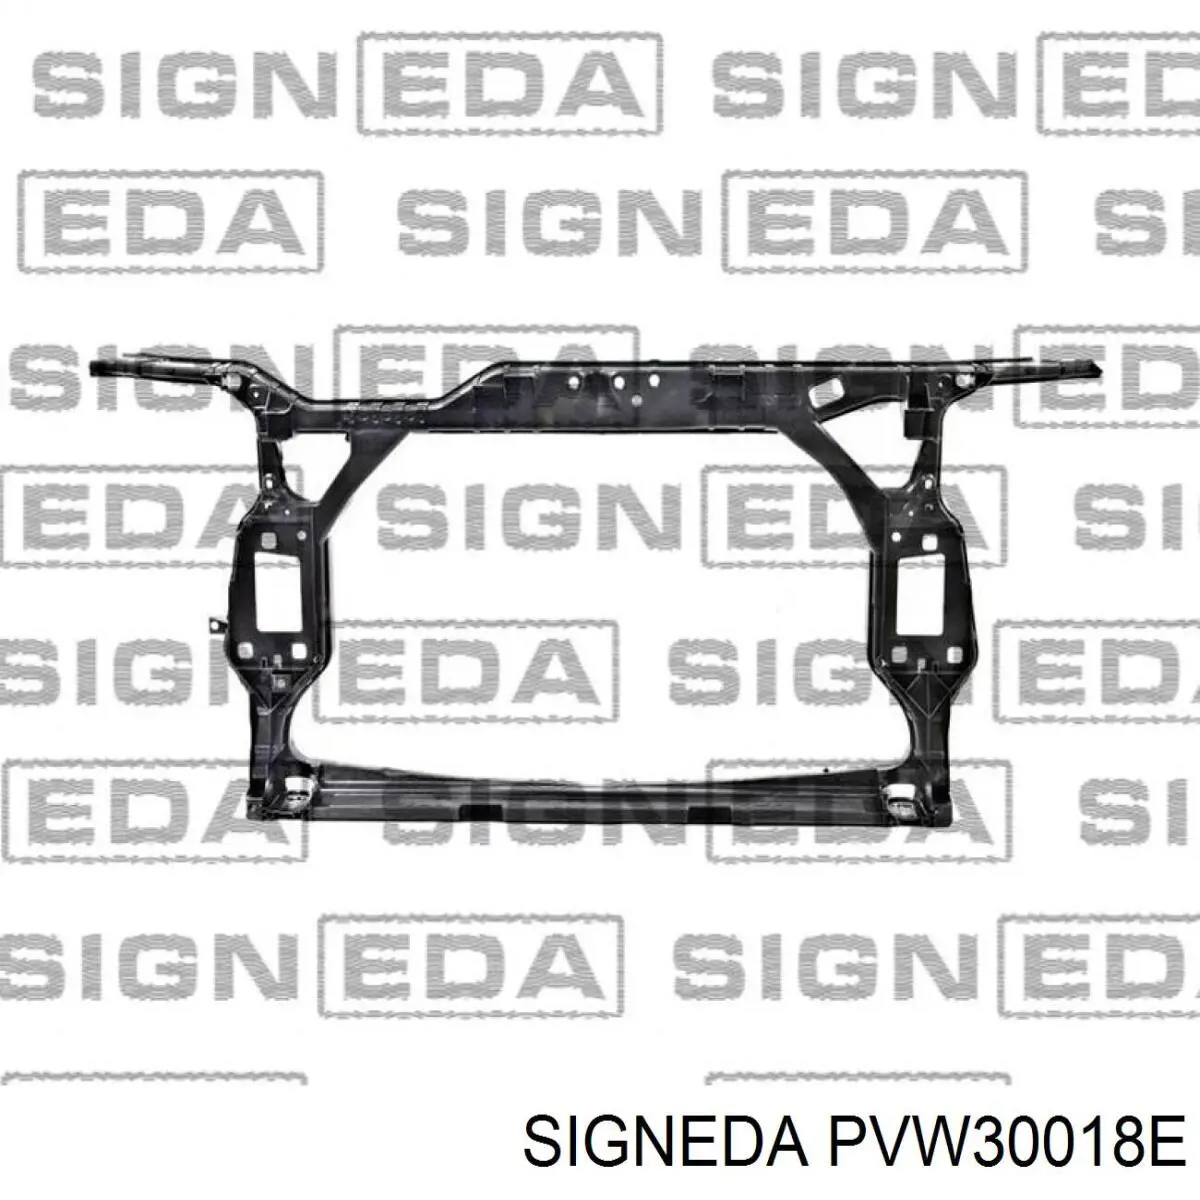 PVW30018E Signeda суппорт радиатора в сборе (монтажная панель крепления фар)